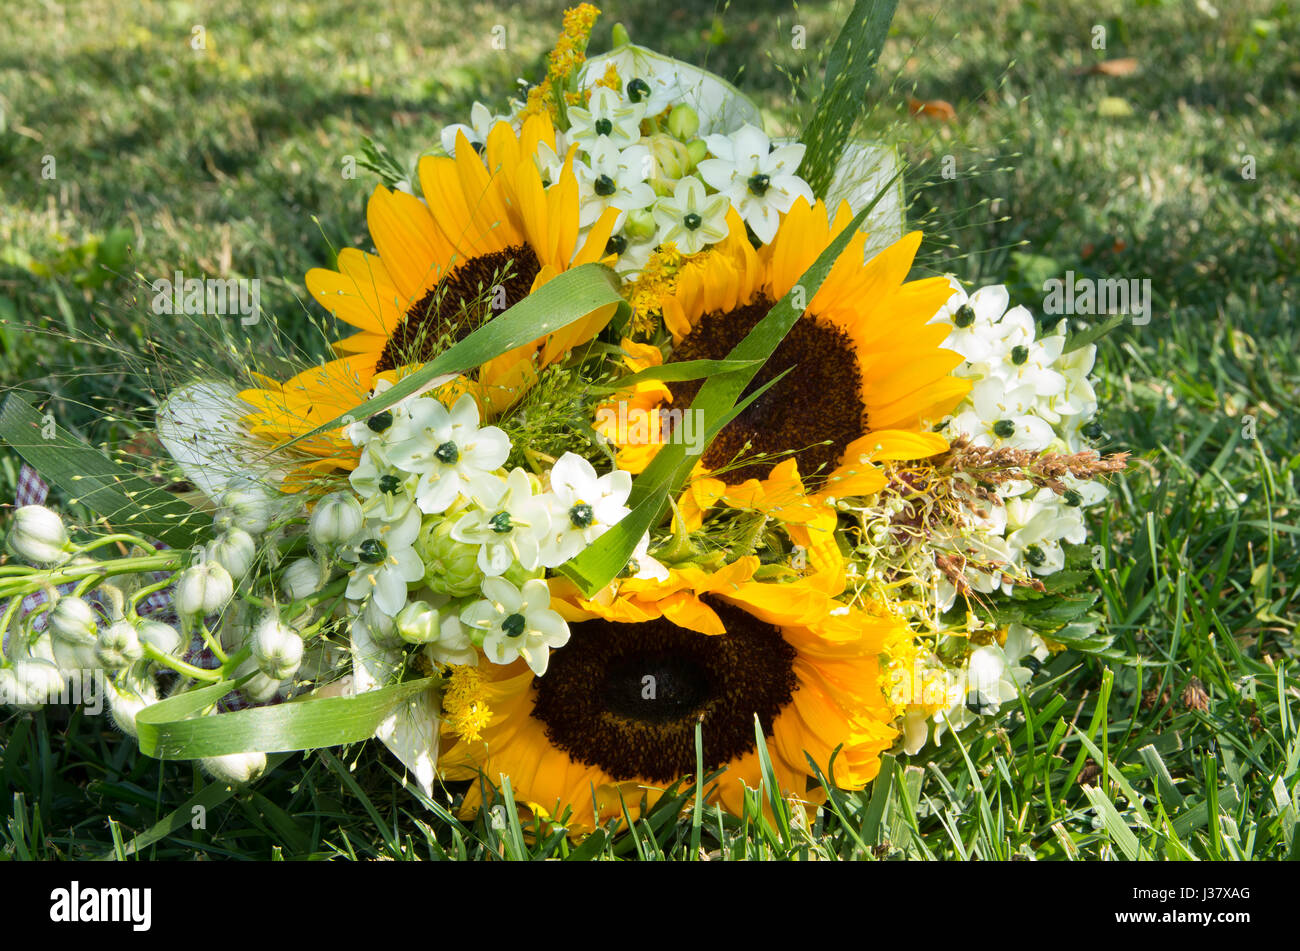 Brautstrauß von Wildpflanzen, Geranien, Sonnenblumen und Brautschuhe Stockfoto